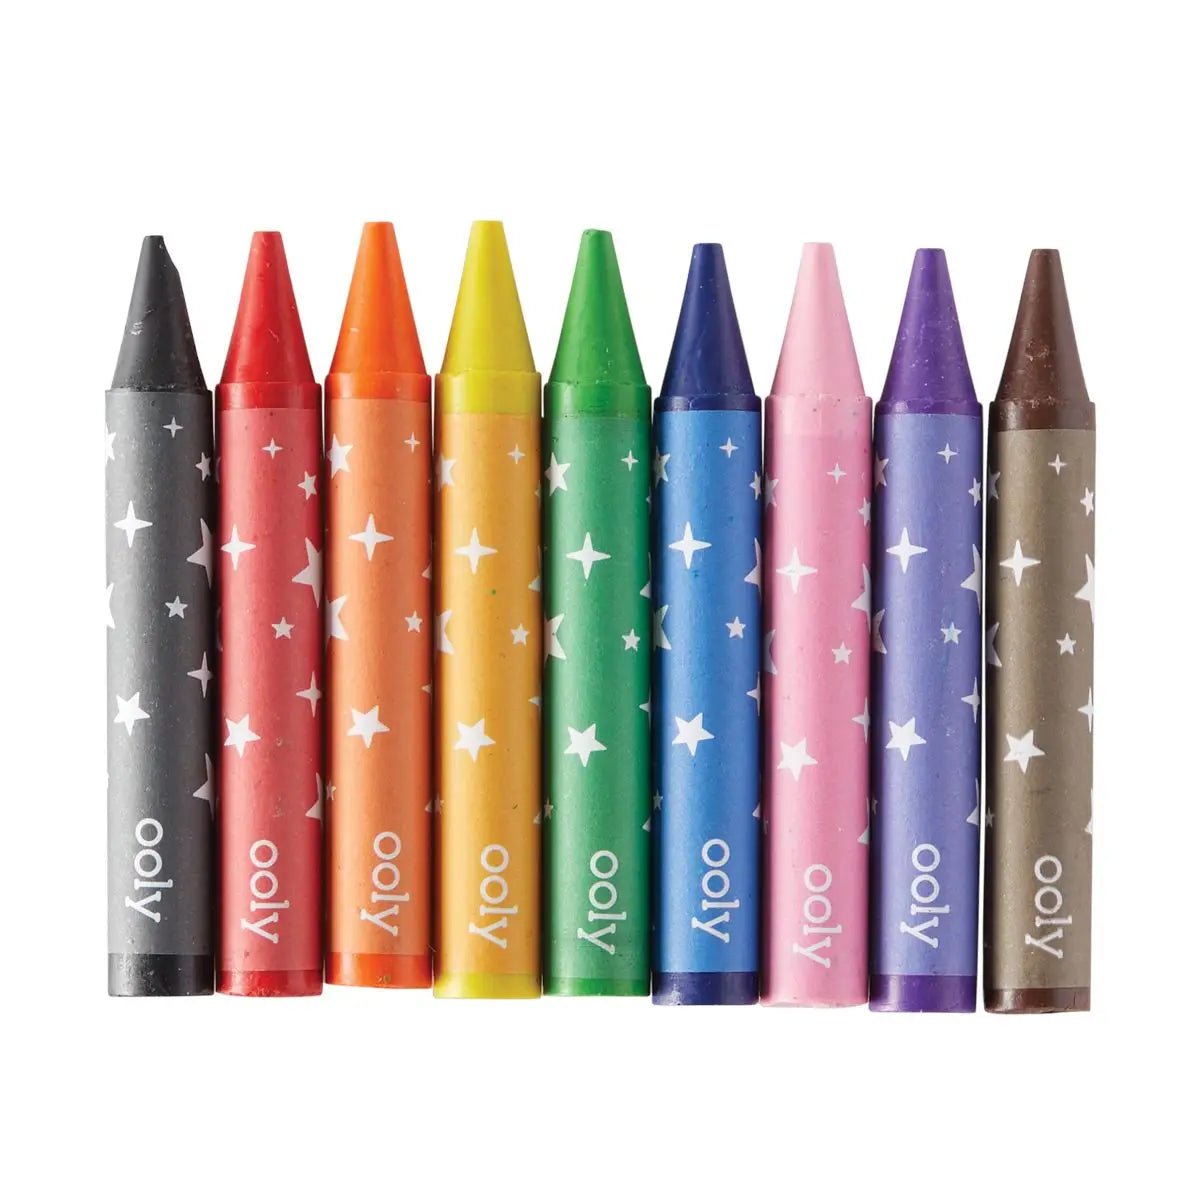 Carry Along Crayon & Coloring Book Kit - Pet Pals